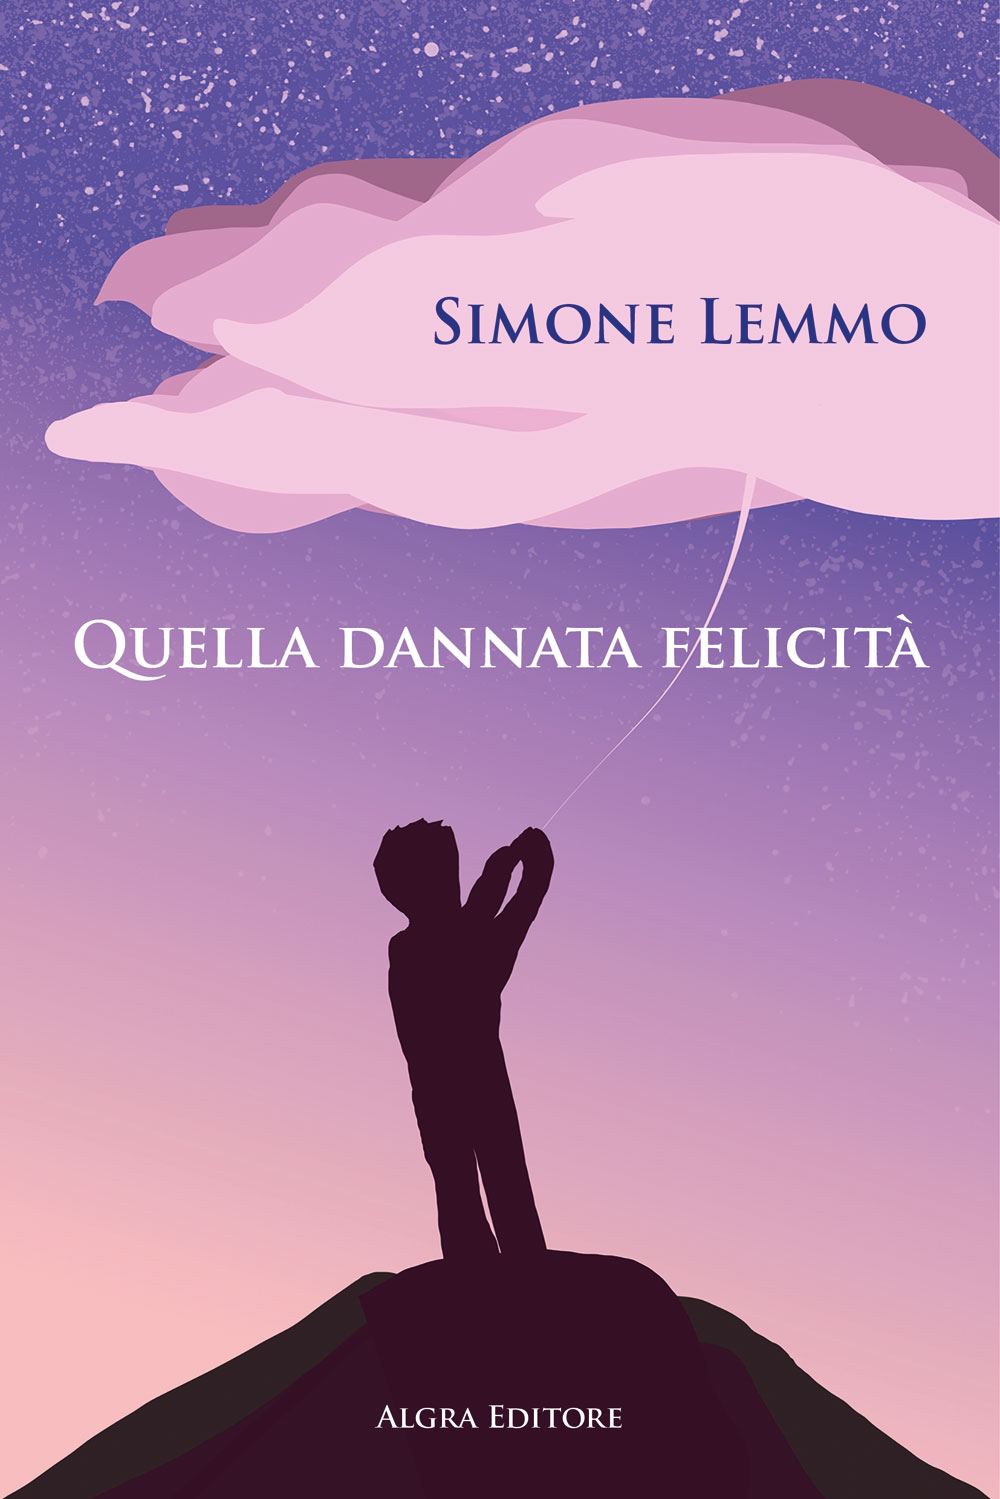 “Quella dannata felicità” (Algra Editore) il primo romanzo di Simone Lemmo, in libreria e in tutti gli store online